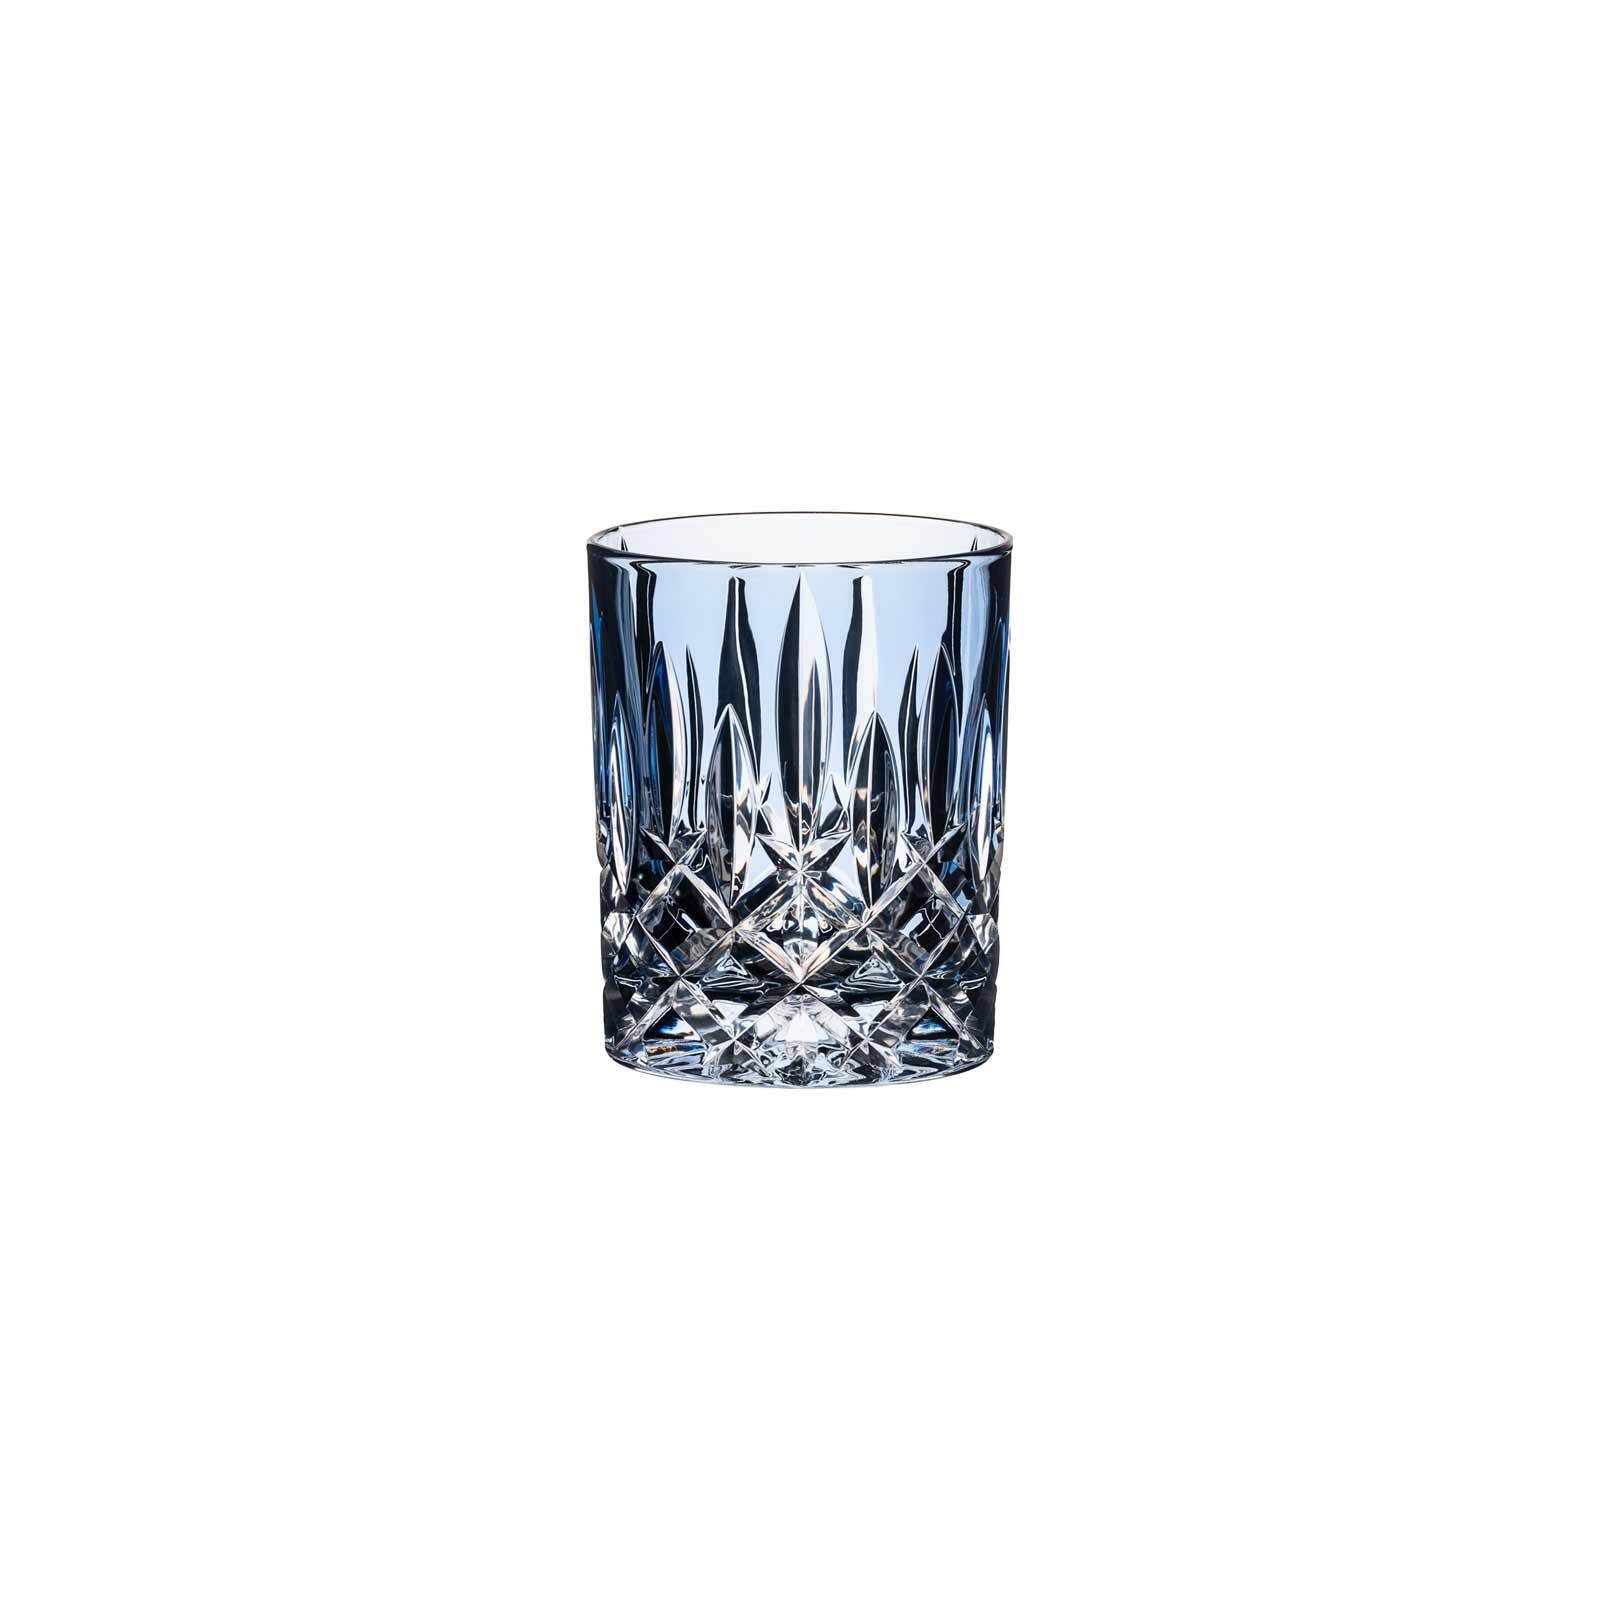 Hellblau Laudon RIEDEL Glas Whiskyglas Whiskyglas 295 Glas ml,